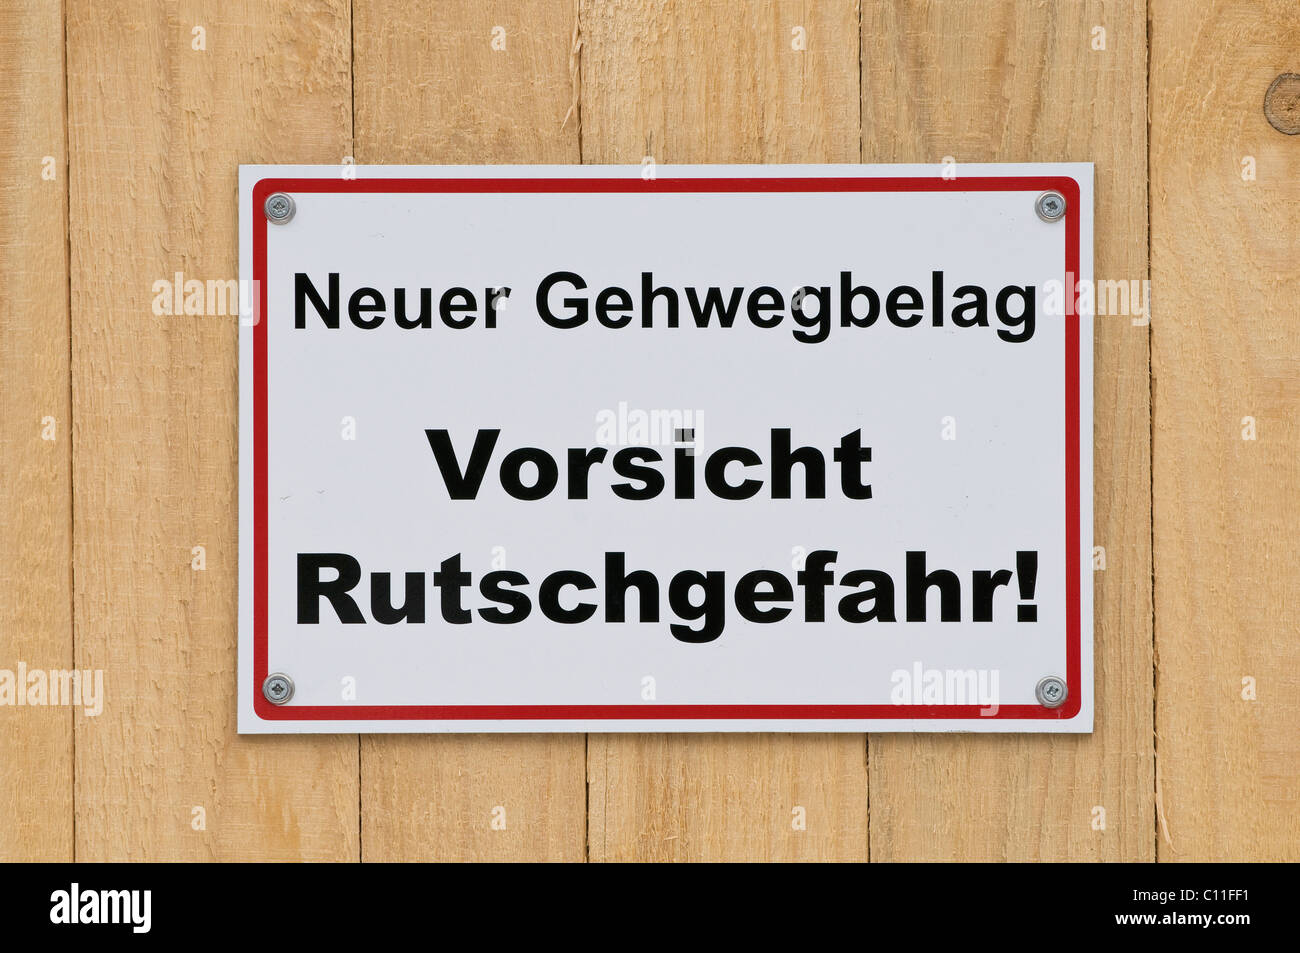 Sign on wooden board fence, Neuer Gehwegbelag Vorsicht Rutschgefahr, new walkway surface, caution slip hazard! Stock Photo